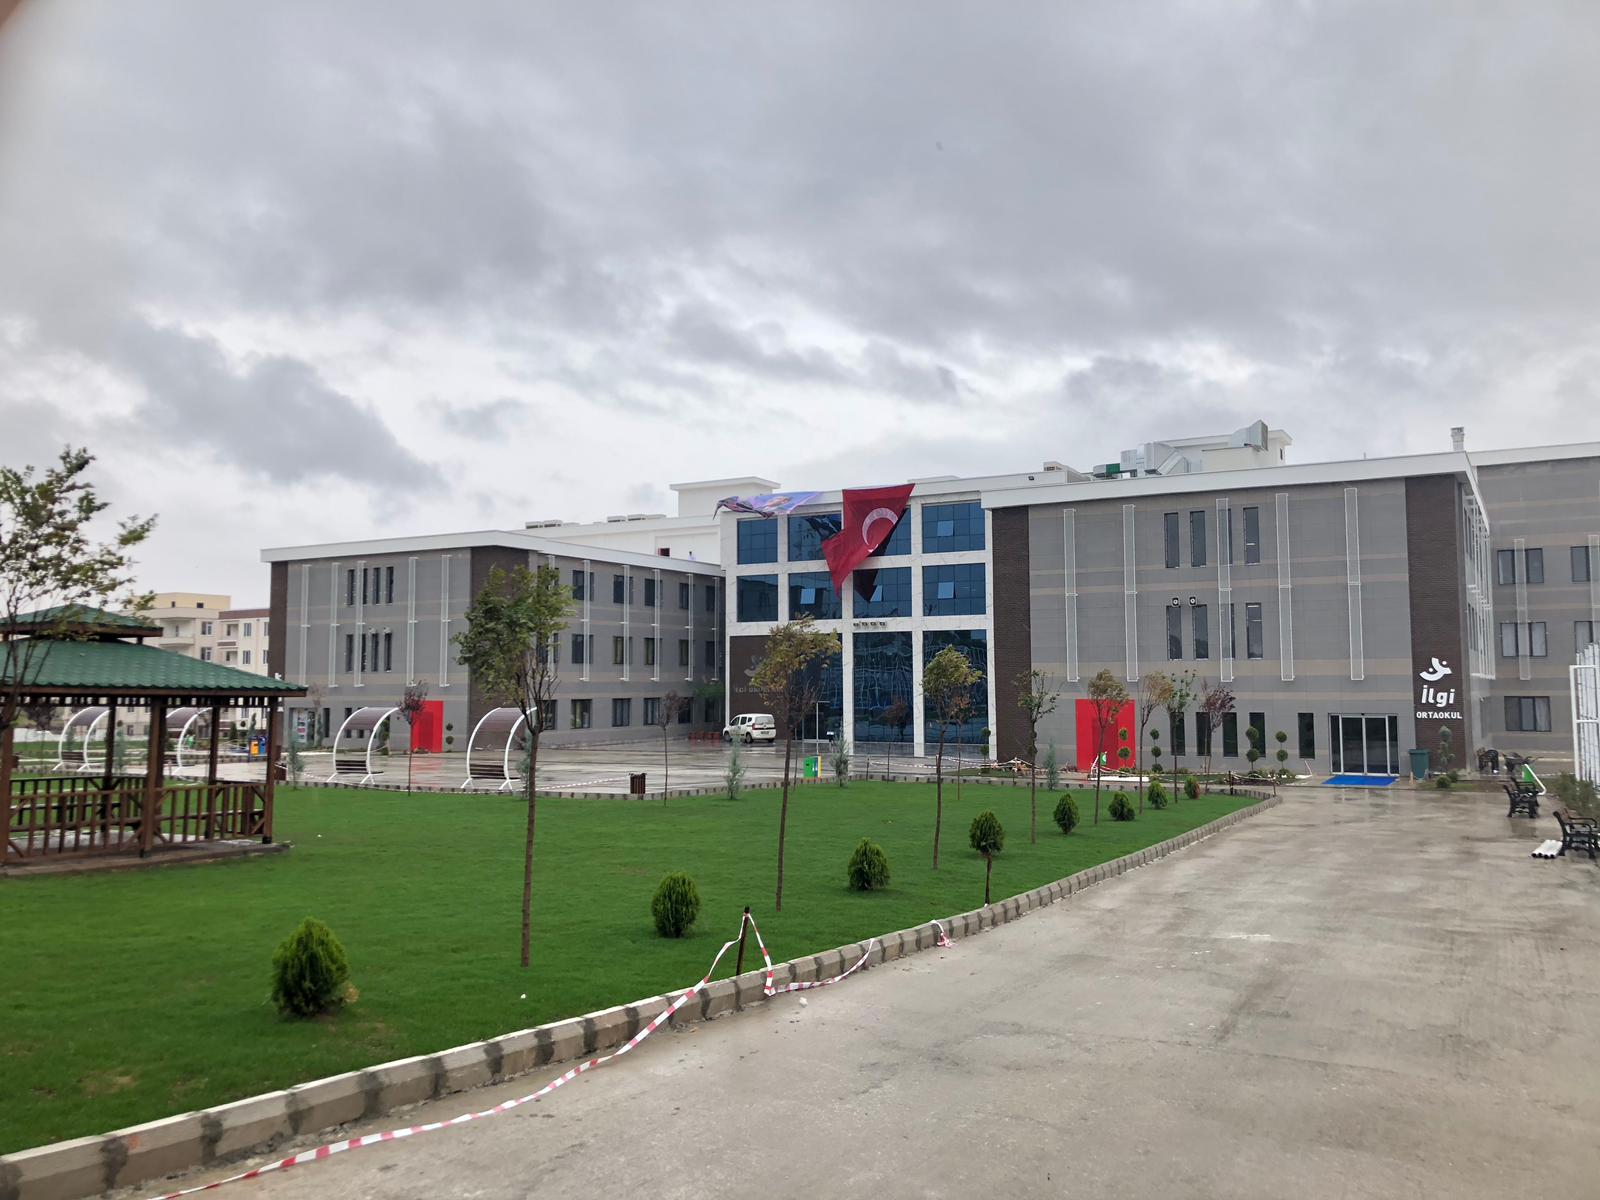 İlgi Okulları Çekmeköy Anadolu Lisesi